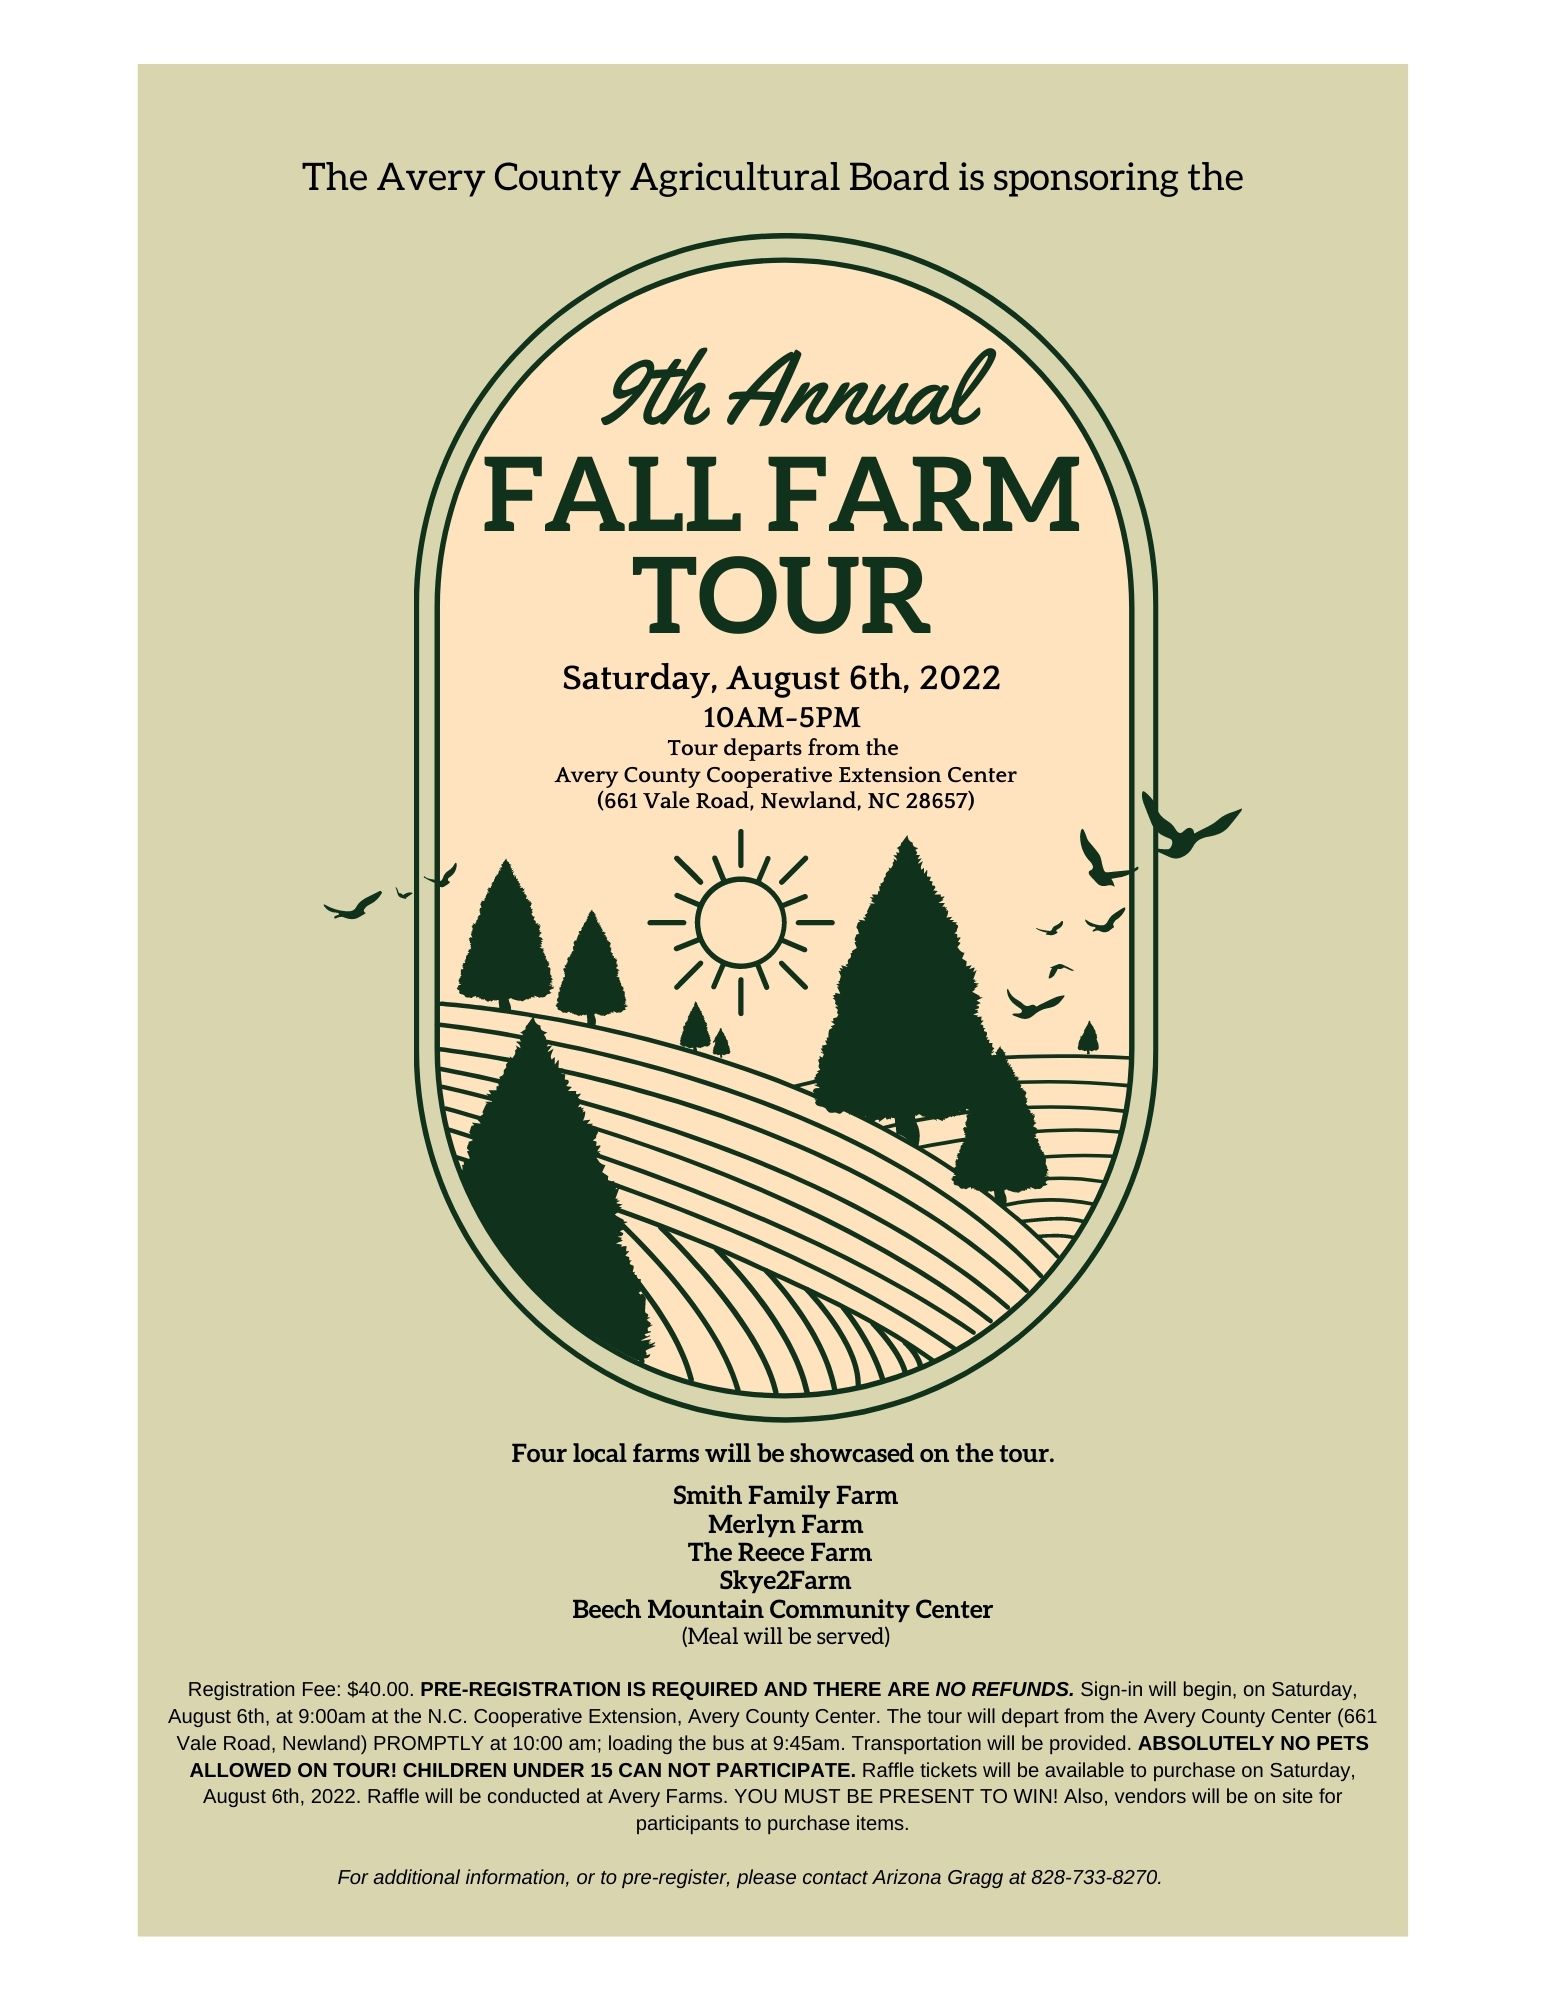 9th Annual Fall Farm tour, Saturday, August 6th, 2022. 10 a.m. - 5 p.m.